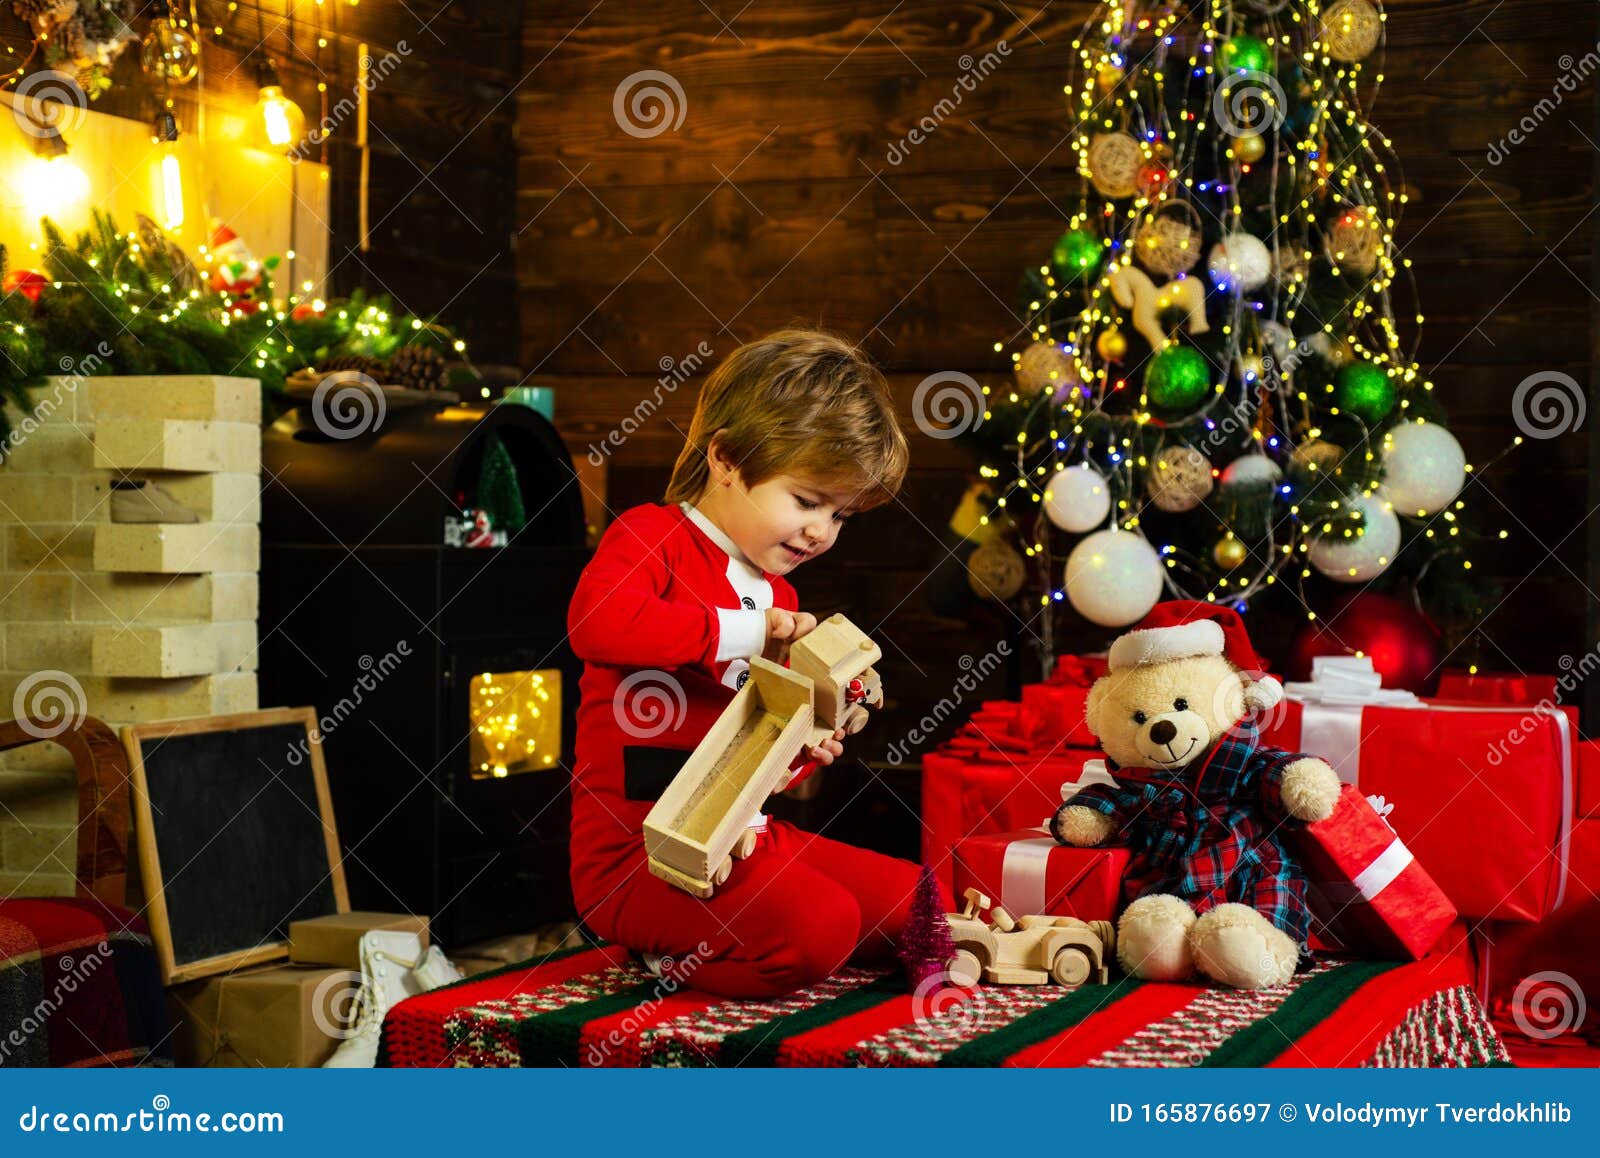 Kerstkind Speelt Met Kerstspeelgoed Op Kerstboomachtergrond Kid Wacht Op  Het Nieuwjaar Gefeliciteerd Stock Afbeelding - Image Of Vooravond,  Achtergrond: 165876697